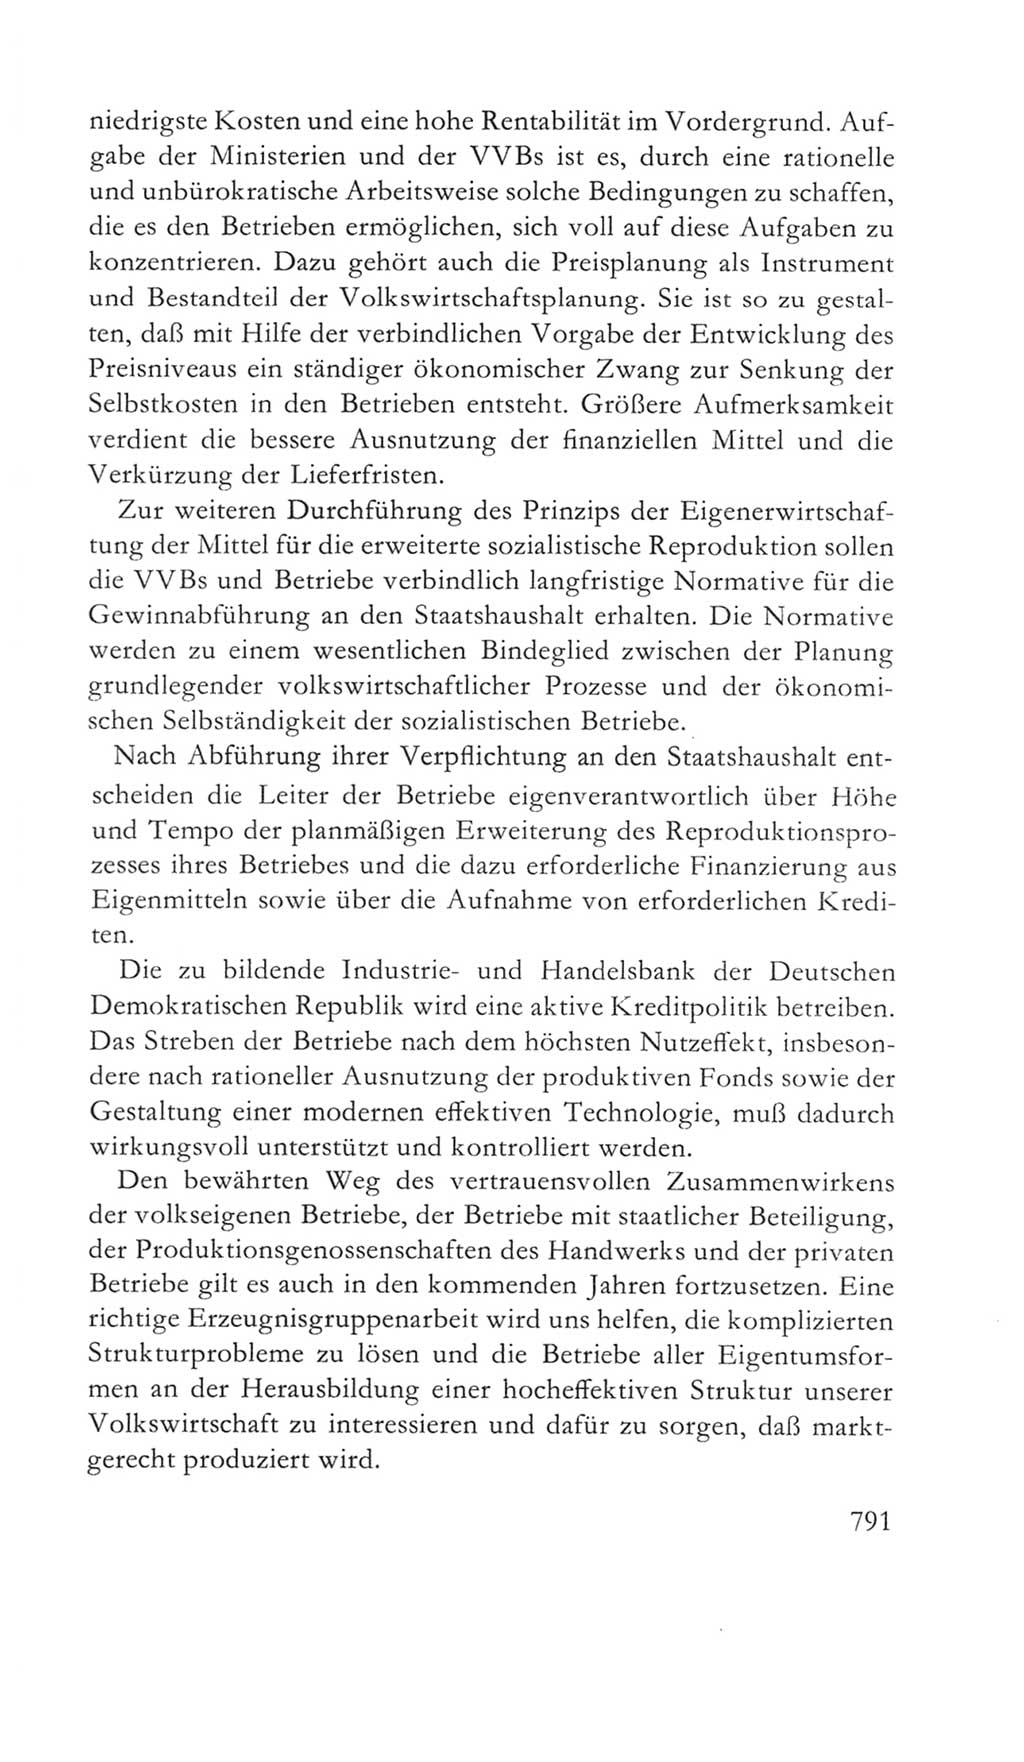 Volkskammer (VK) der Deutschen Demokratischen Republik (DDR) 5. Wahlperiode 1967-1971, Seite 791 (VK. DDR 5. WP. 1967-1971, S. 791)